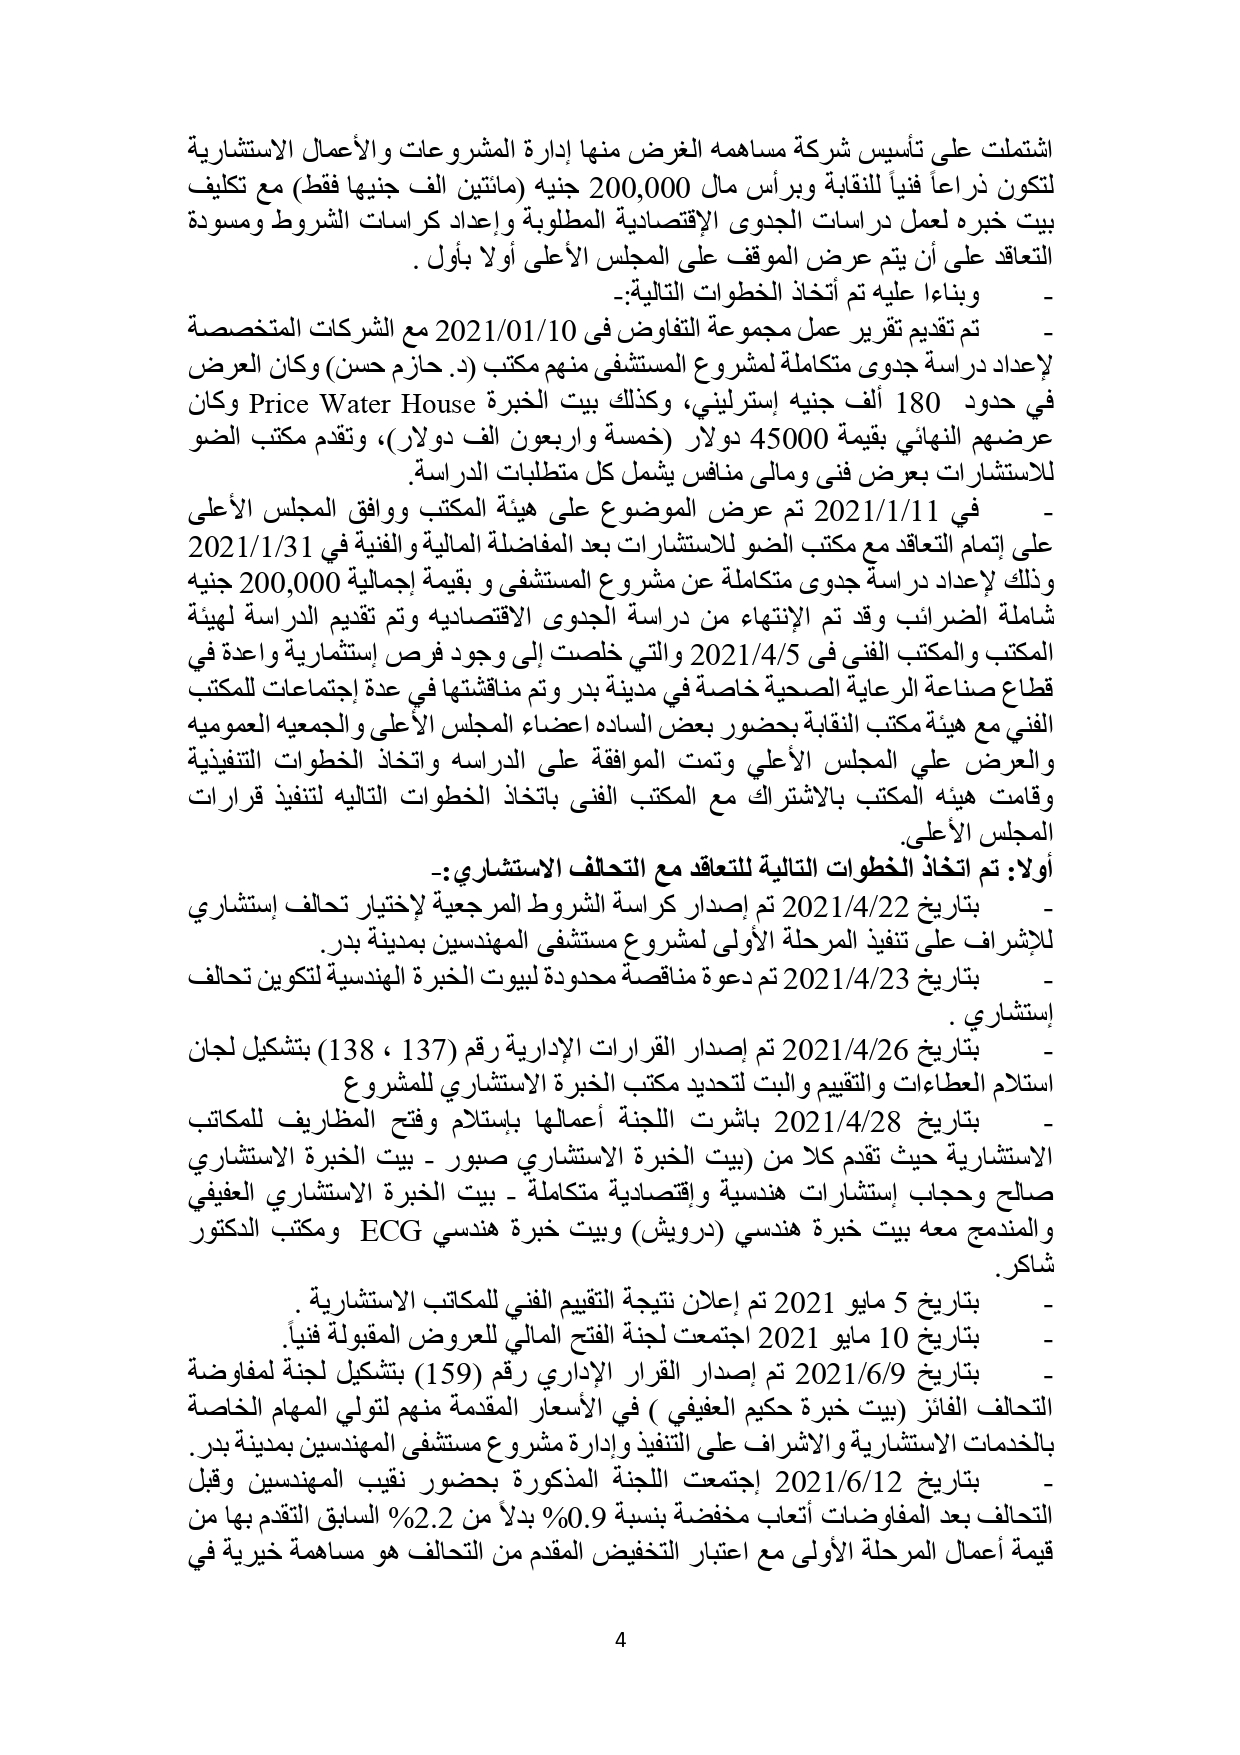 البيان النهائى حول مشروع مستشفى المهندسين بمدينة بدر_page-0004